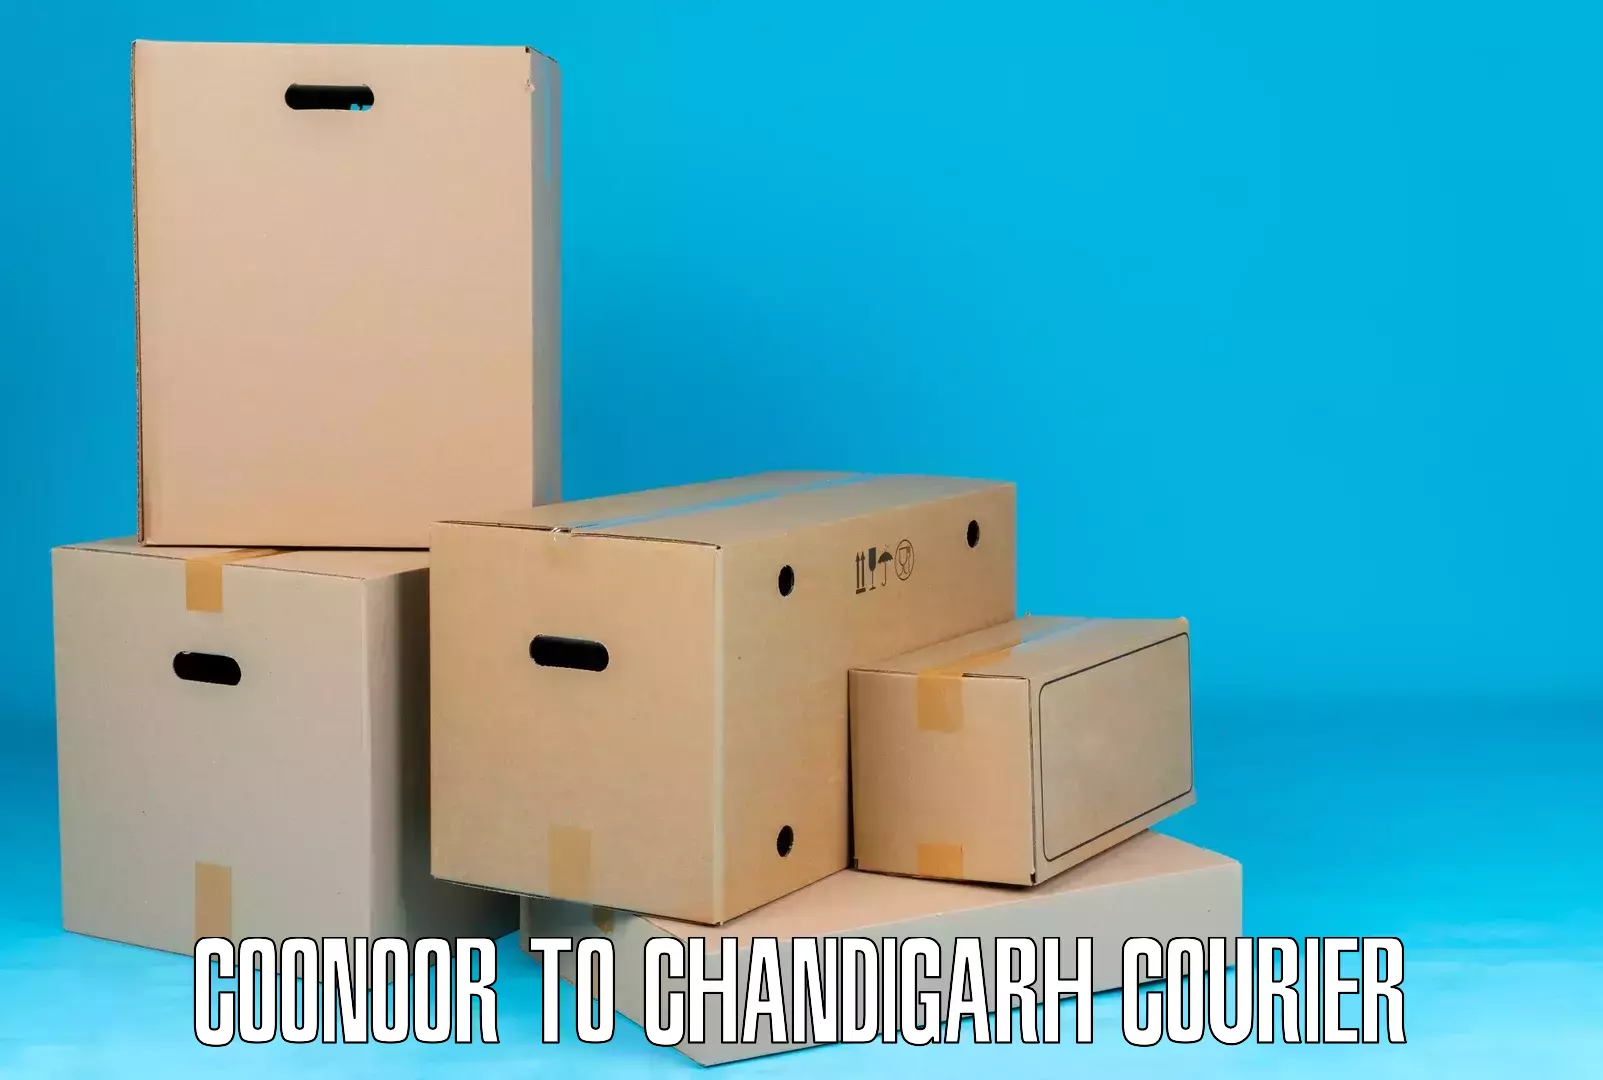 Bulk courier orders Coonoor to Chandigarh